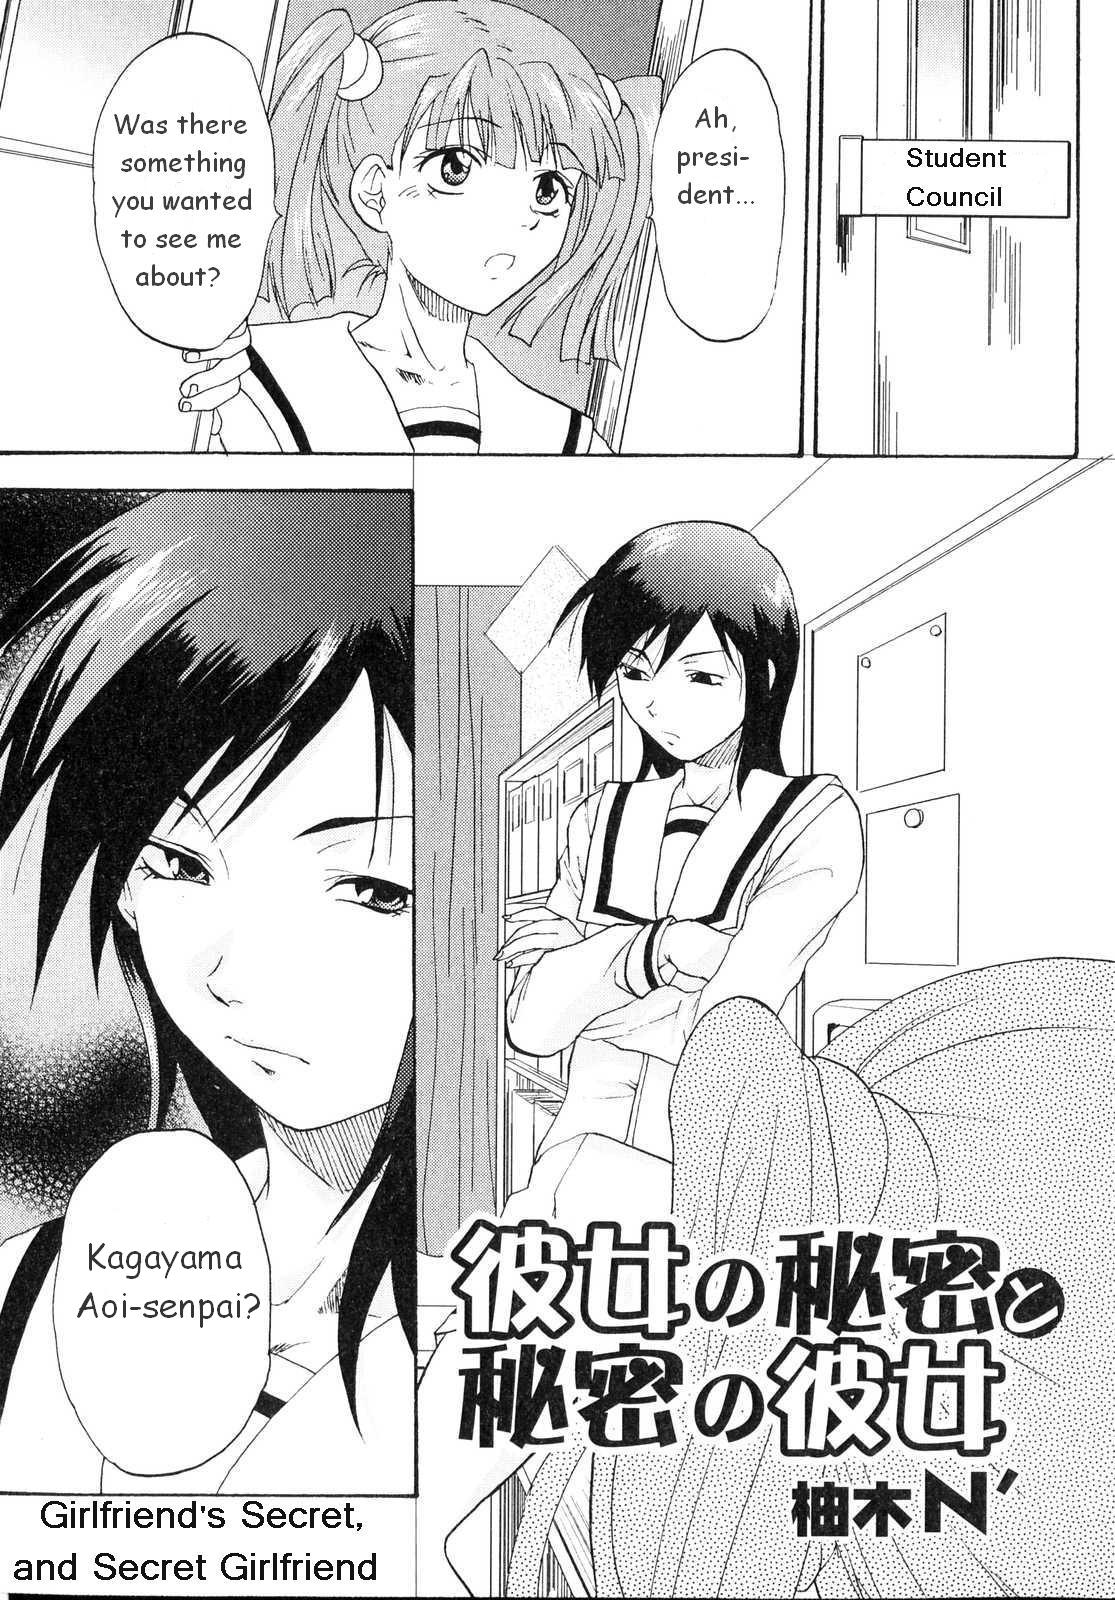 [Yuzuki N Dash] Kanojo no Himitsu to Himitsu no Kanojo | Girlfriend's Secret, Secret Girlfriend (Futanarikko Lovers 2) [English] {Tigerhorse} page 1 full